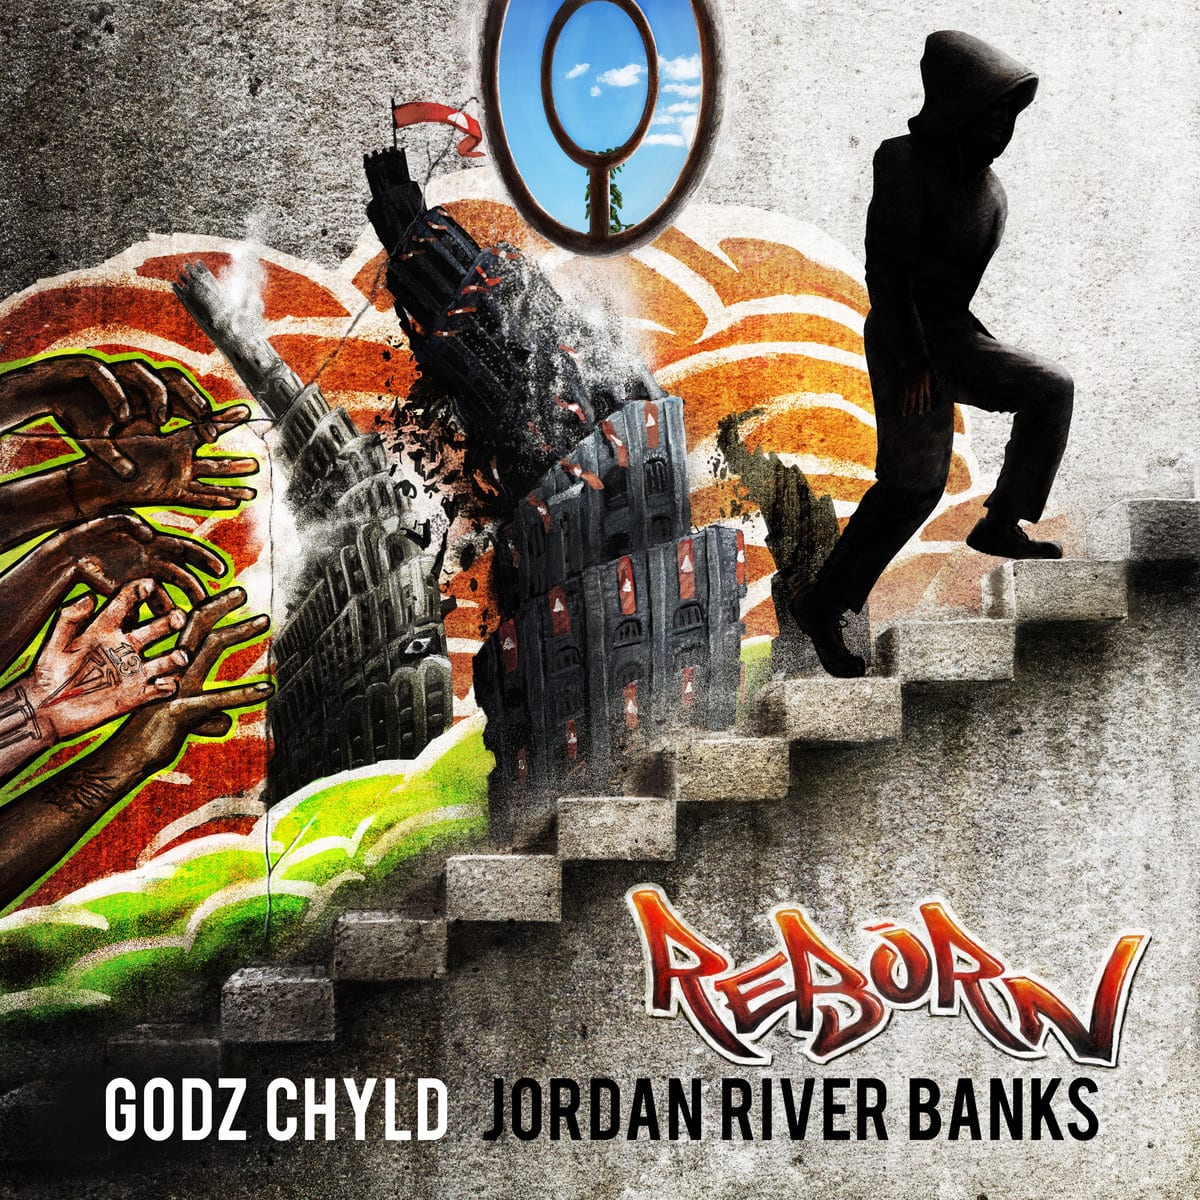 New EP By Godz Chyld & Jordan River Banks - Reborn